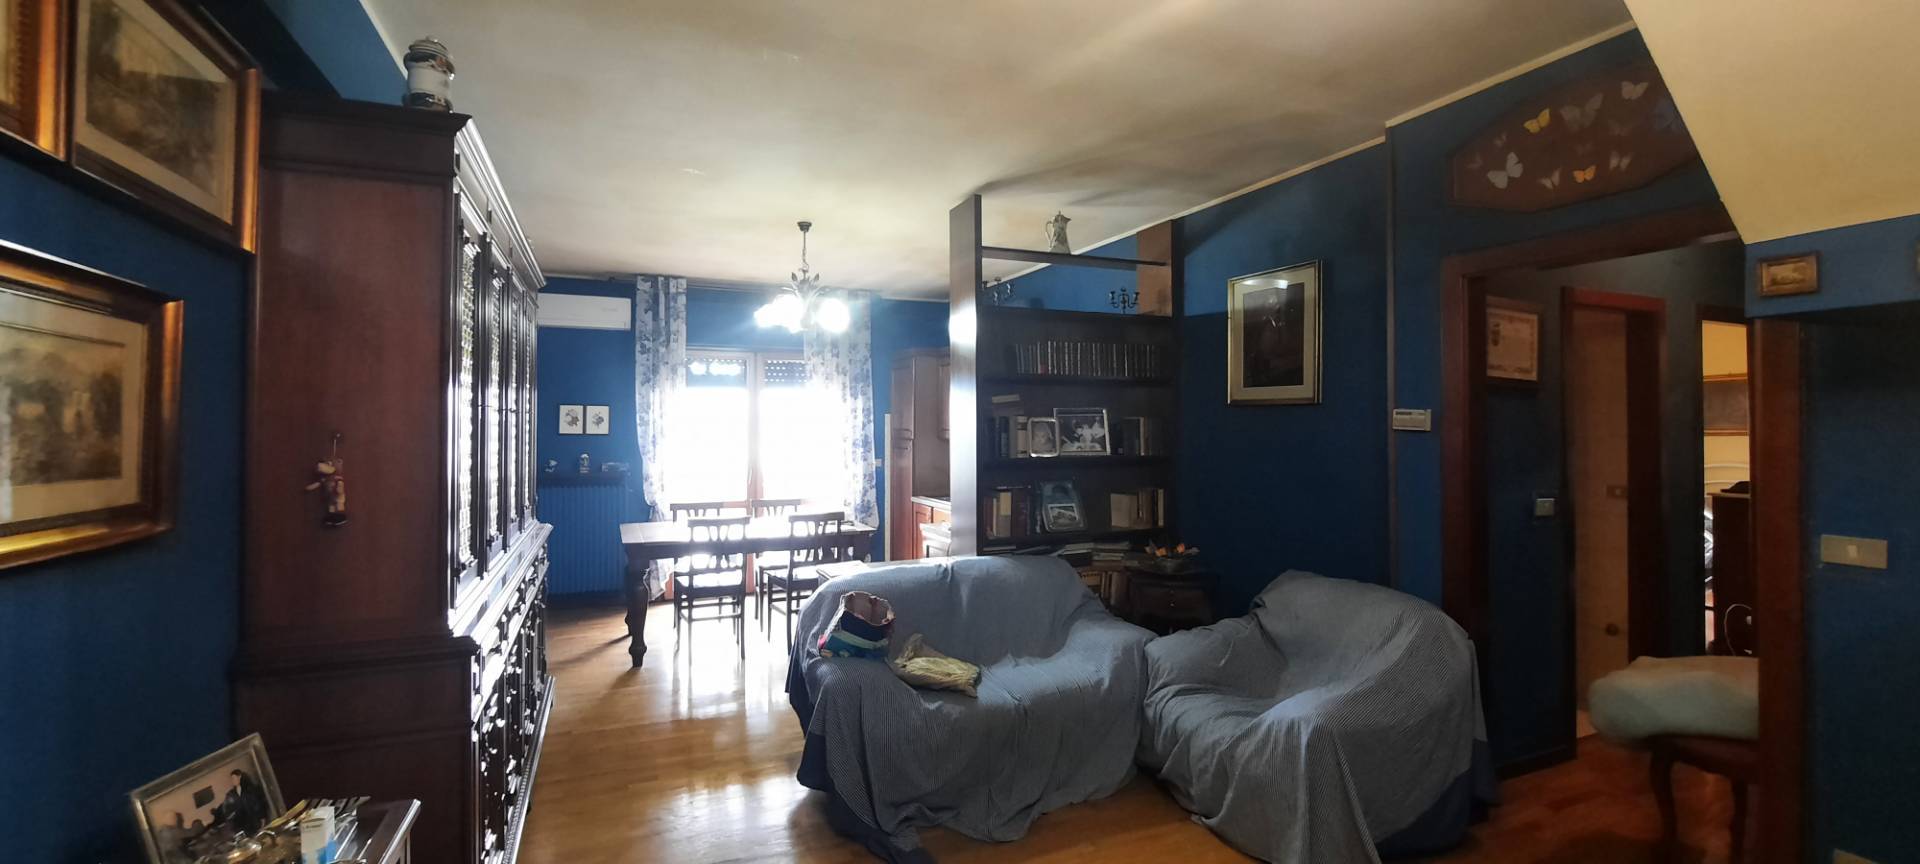 Appartamento in vendita a Folignano, 6 locali, zona Località: VillaPigna, prezzo € 150.000 | PortaleAgenzieImmobiliari.it